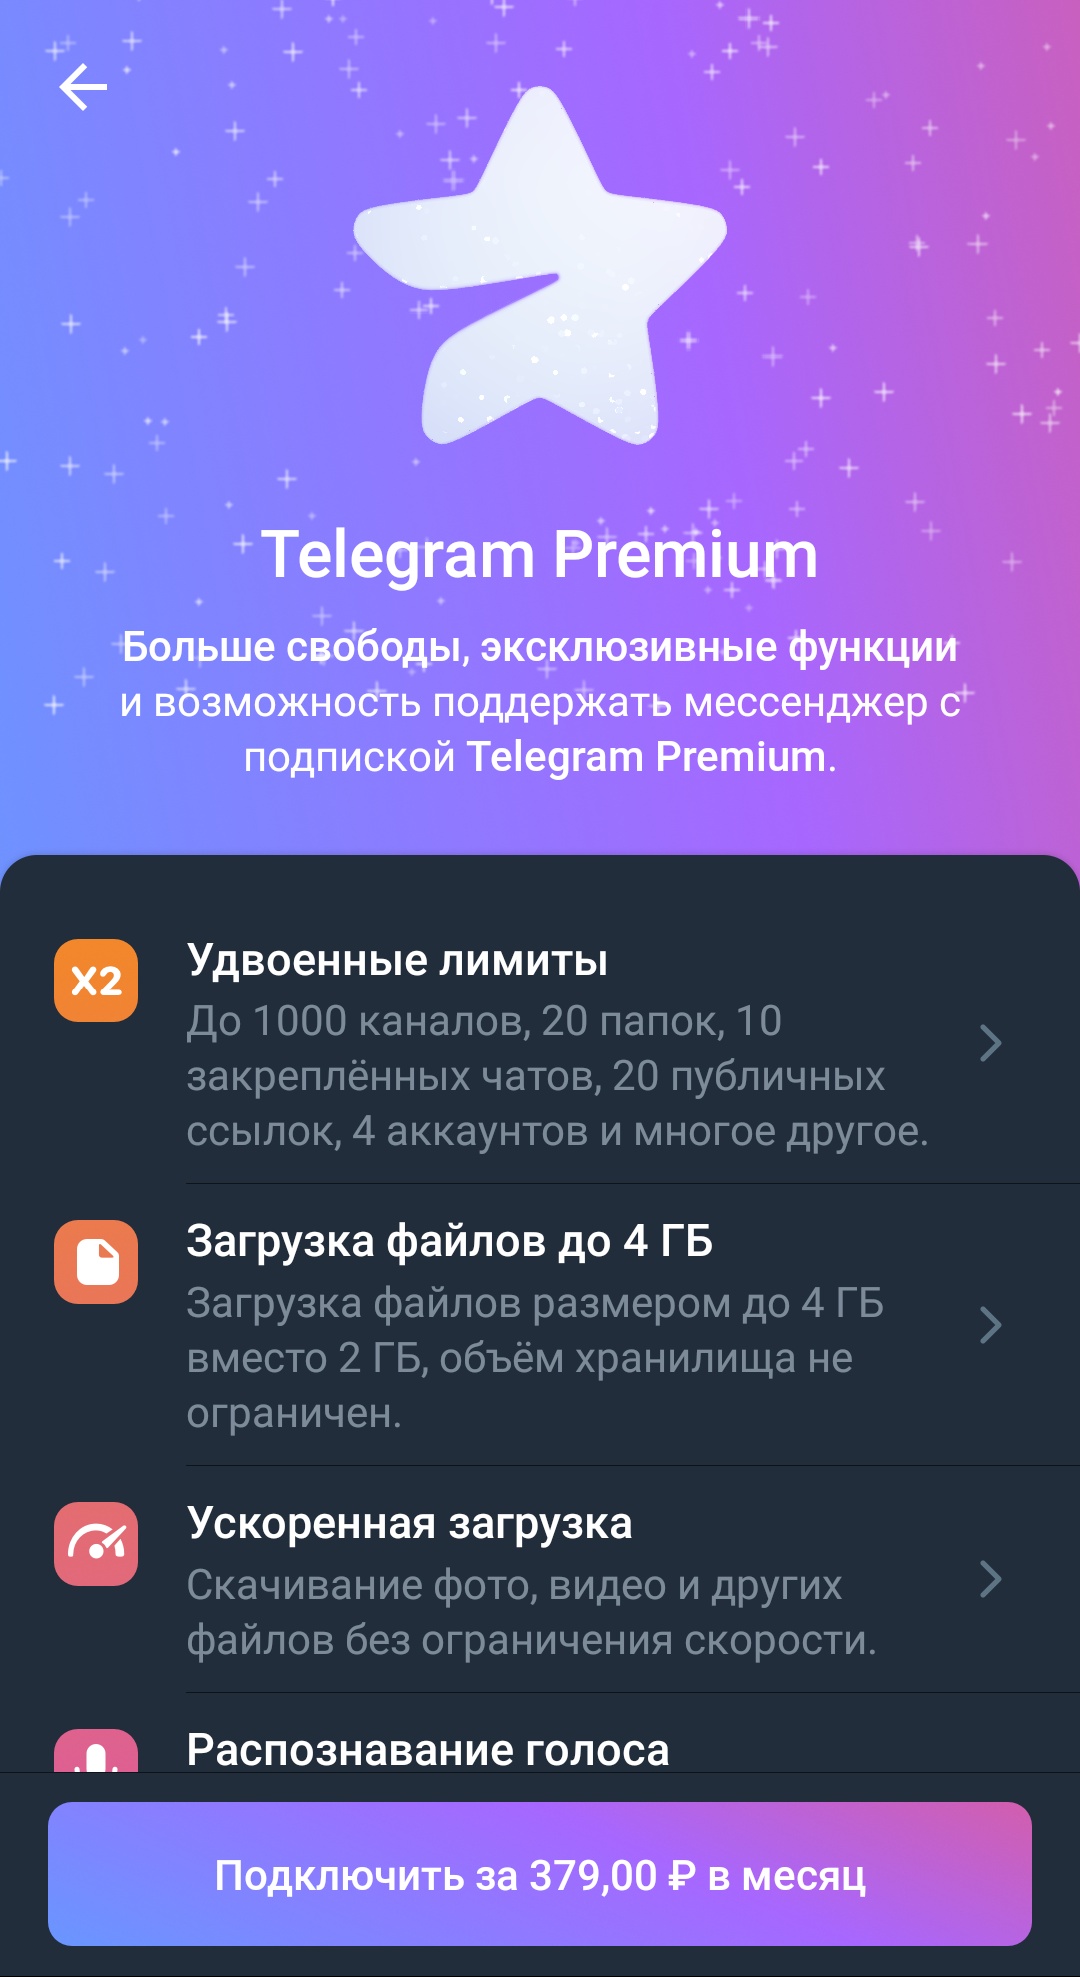 Телеграмм премиум скачать бесплатно андроид 2023 последняя версия без вирусов на русском (119) фото